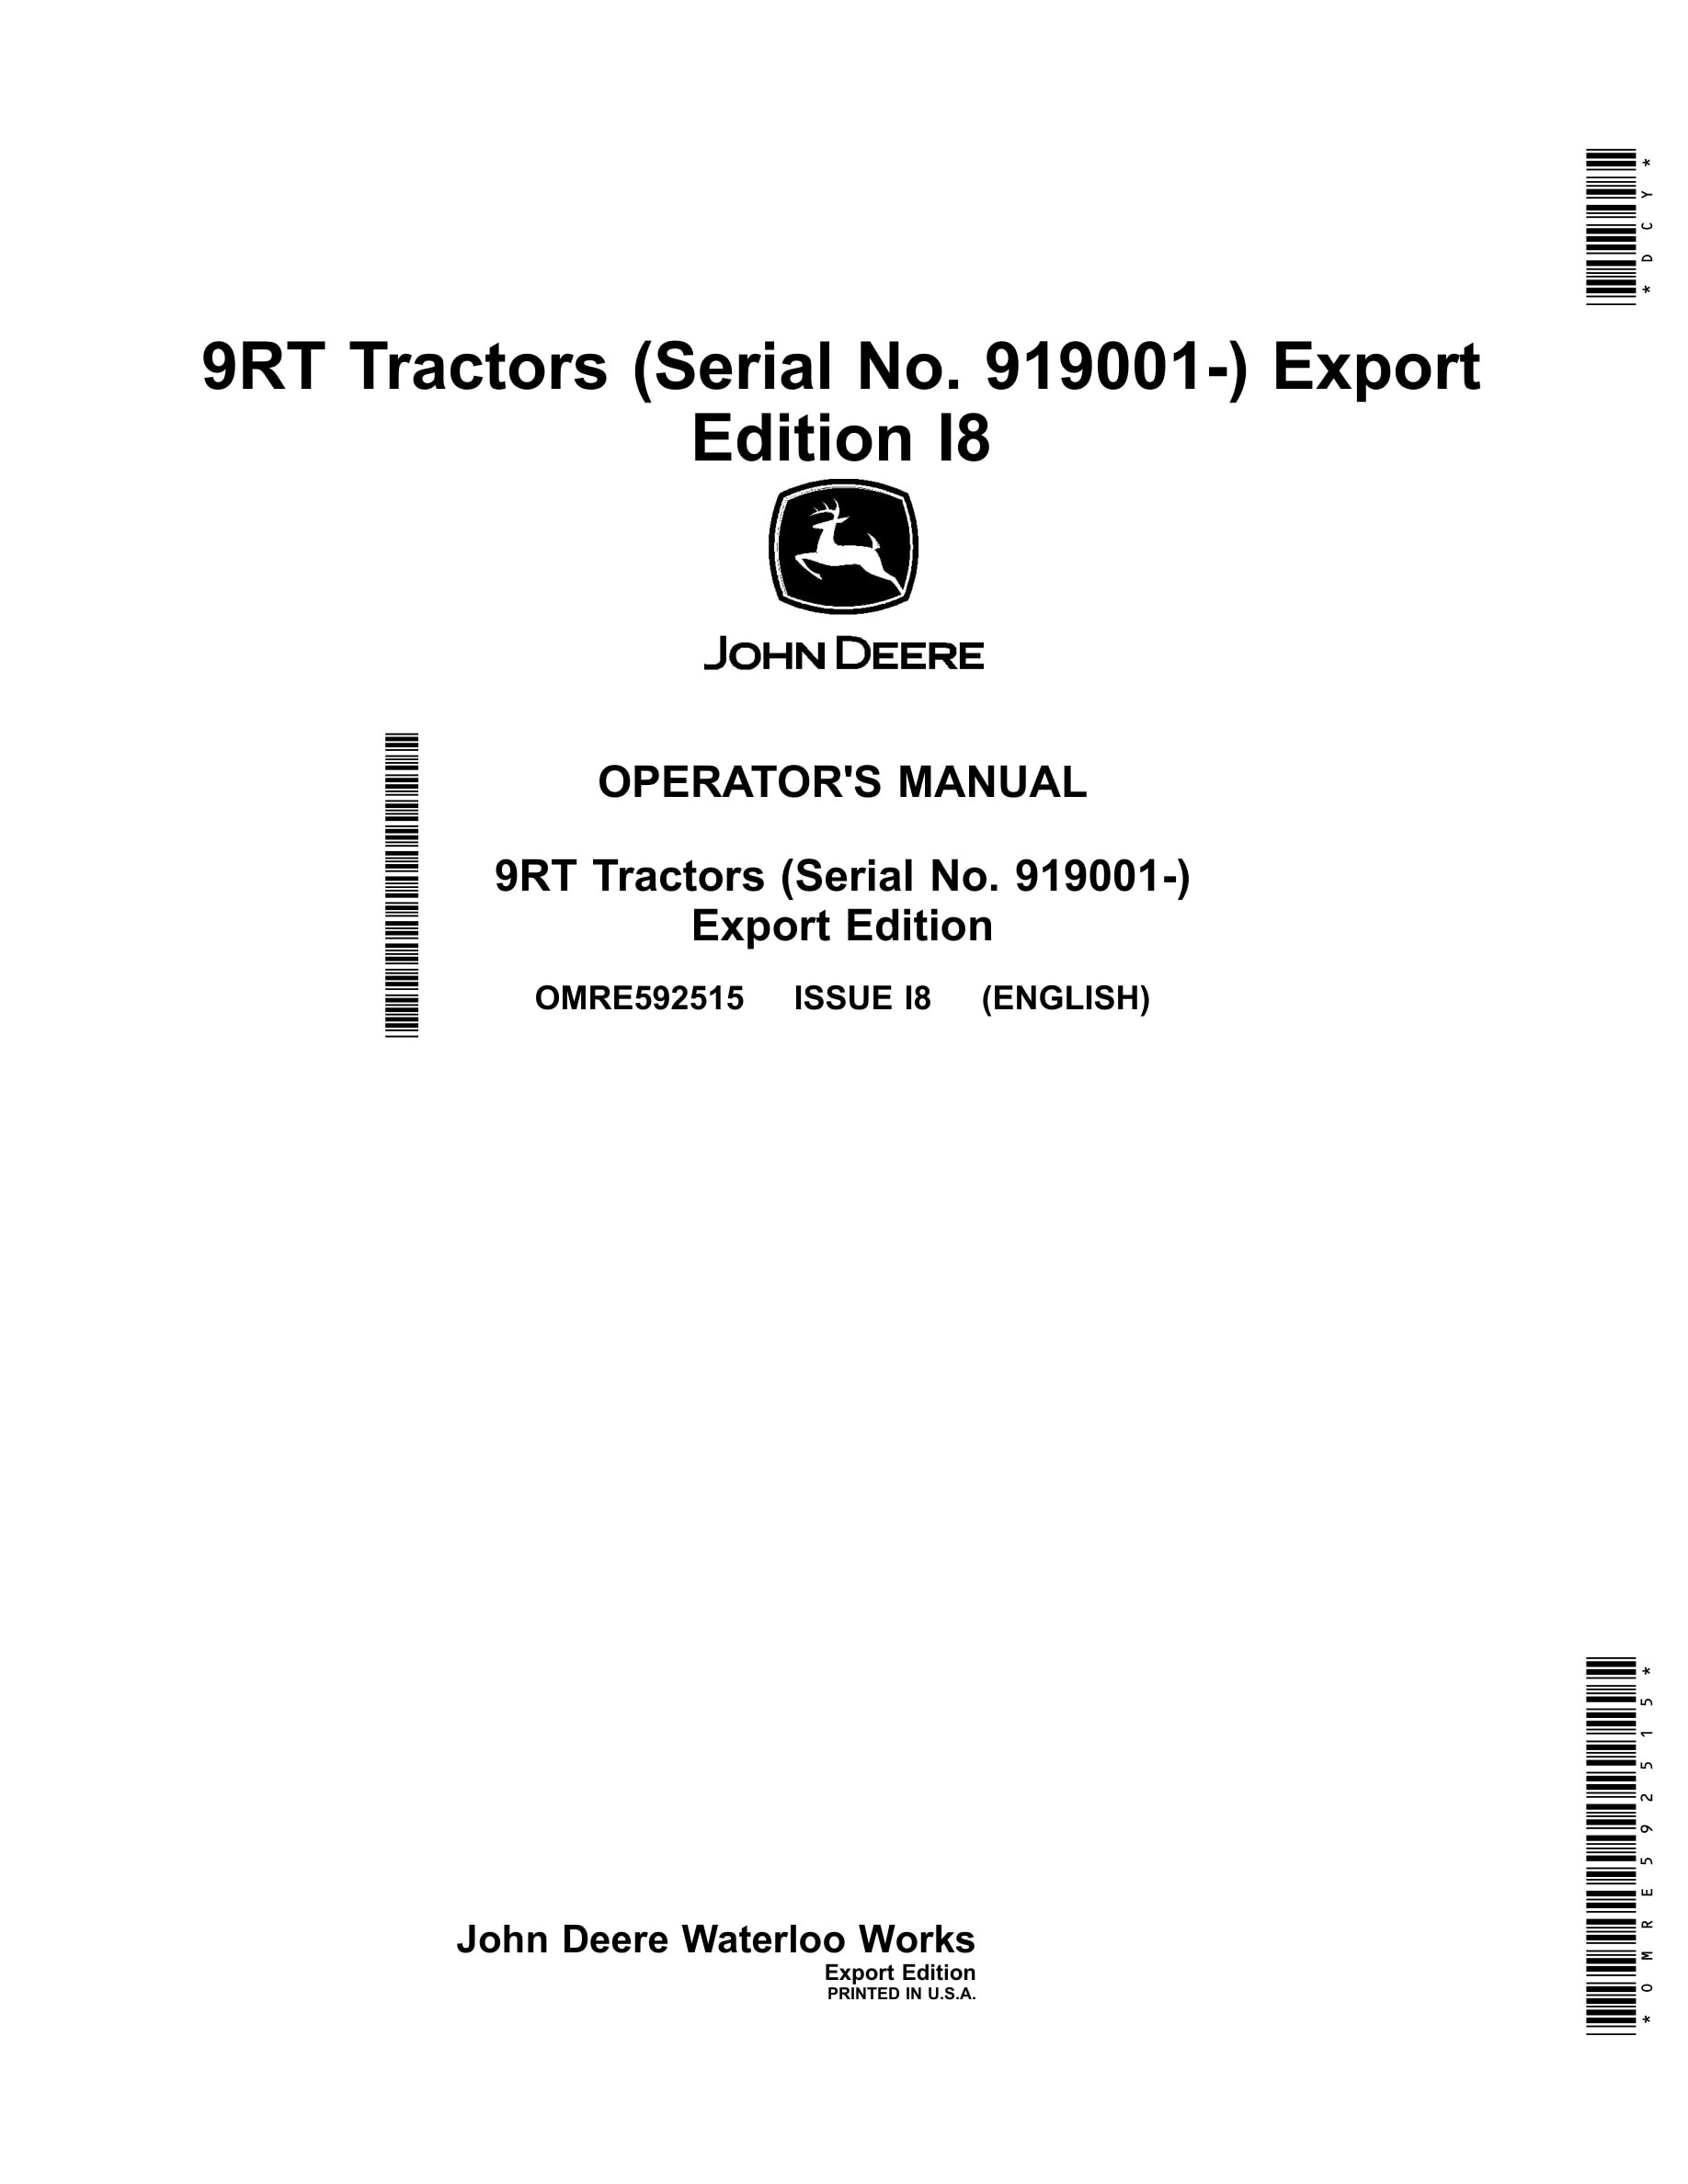 John Deere 9rt Tractors Operator Manuals OMRE592515-1